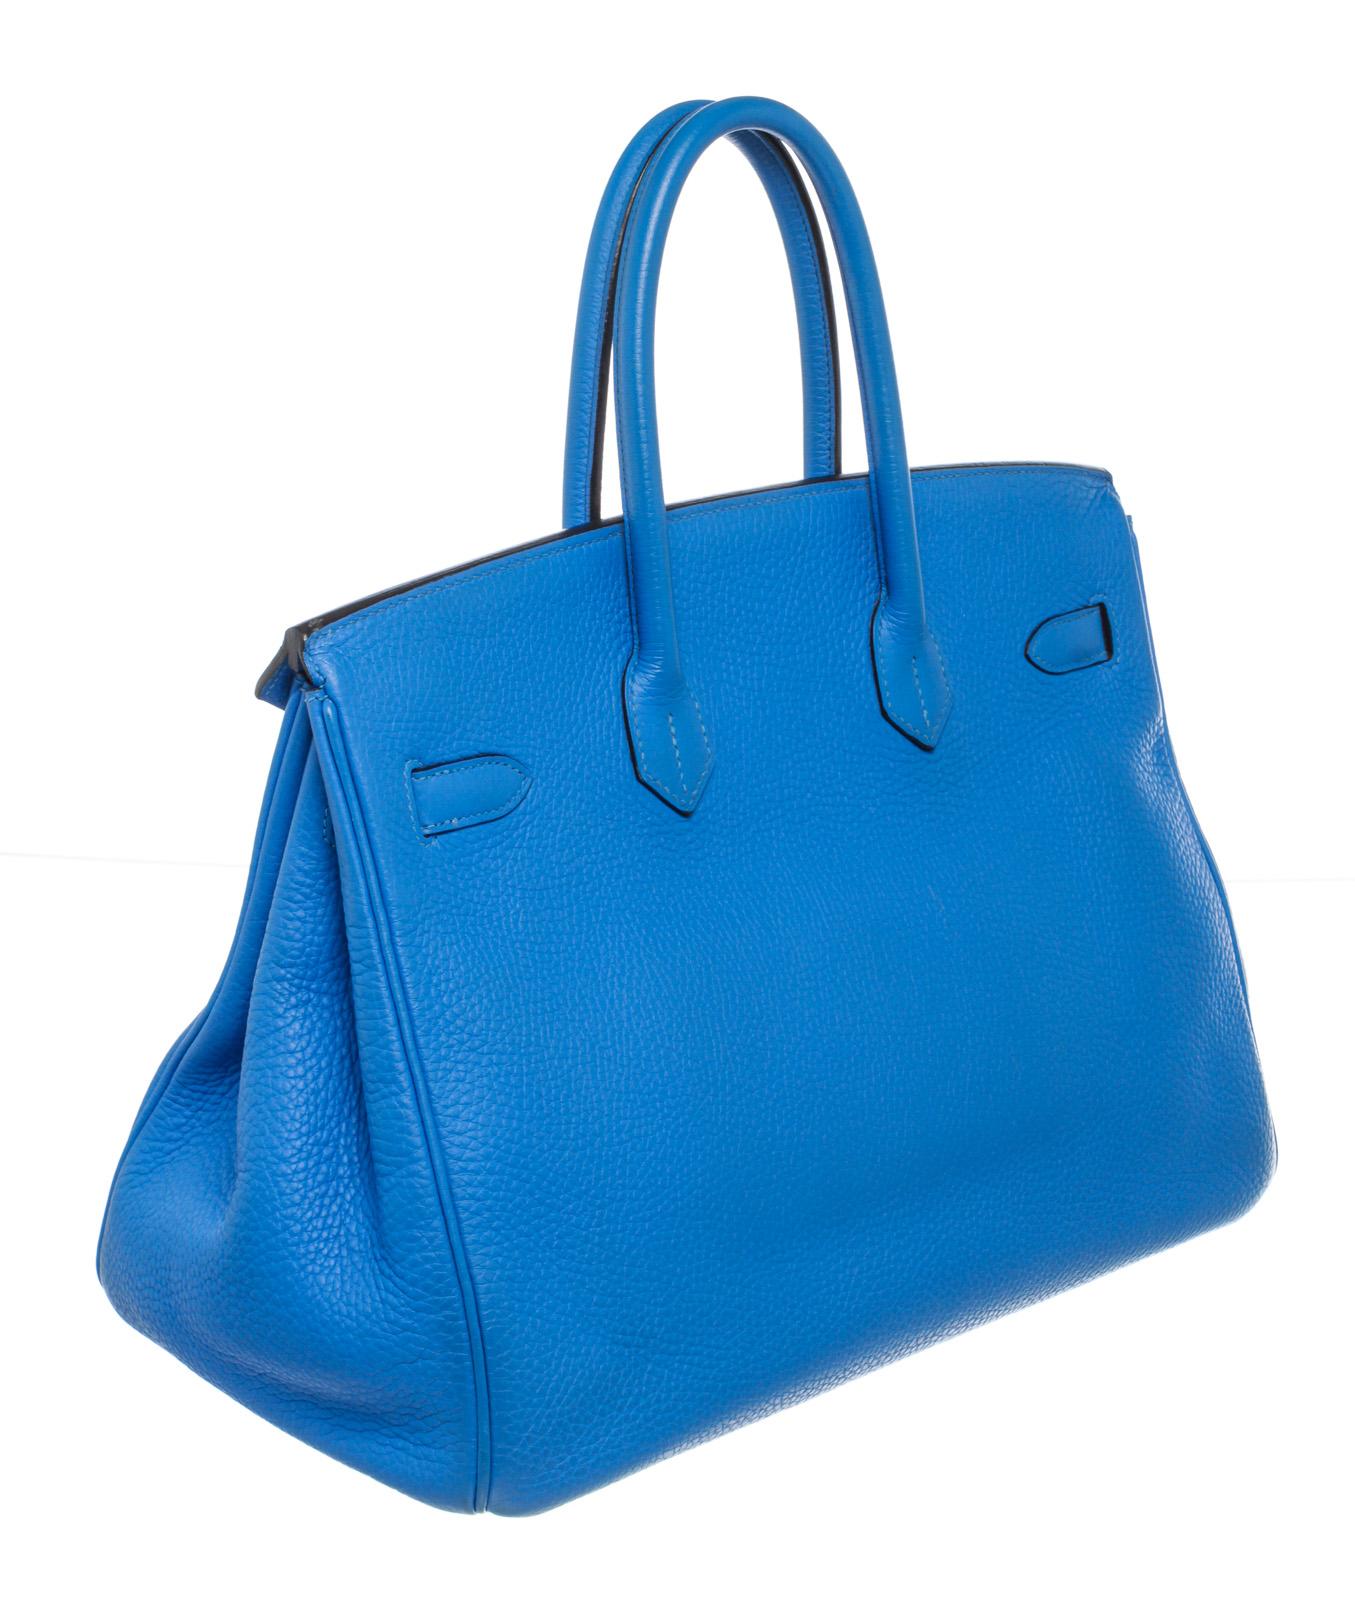 Hermes Blue Toge Leather Birkin 35cm Shoulder Bag 1